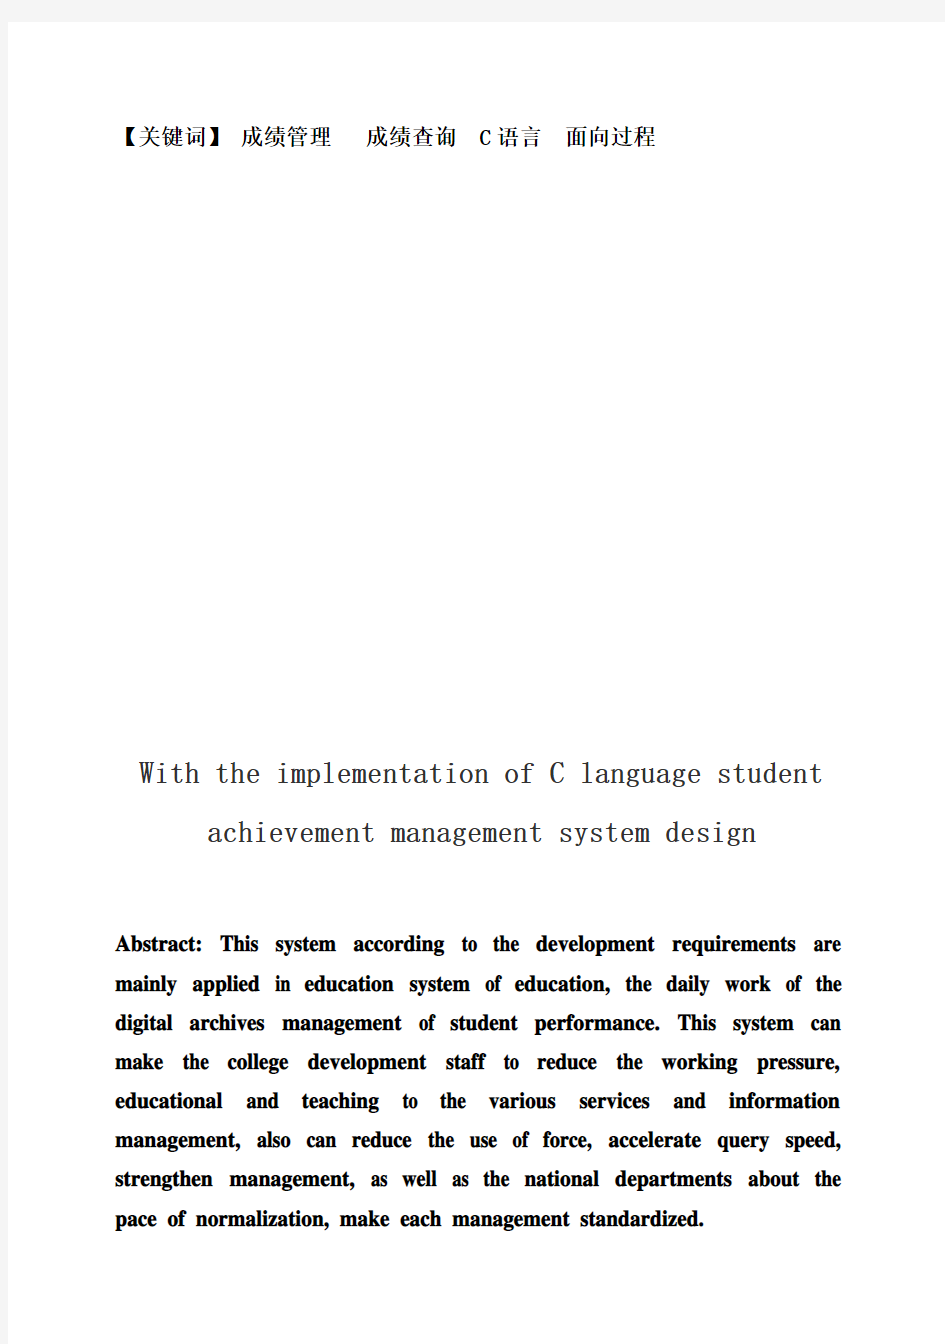 (完整版)C语言学生成绩管理系统设计与实现毕业设计论文